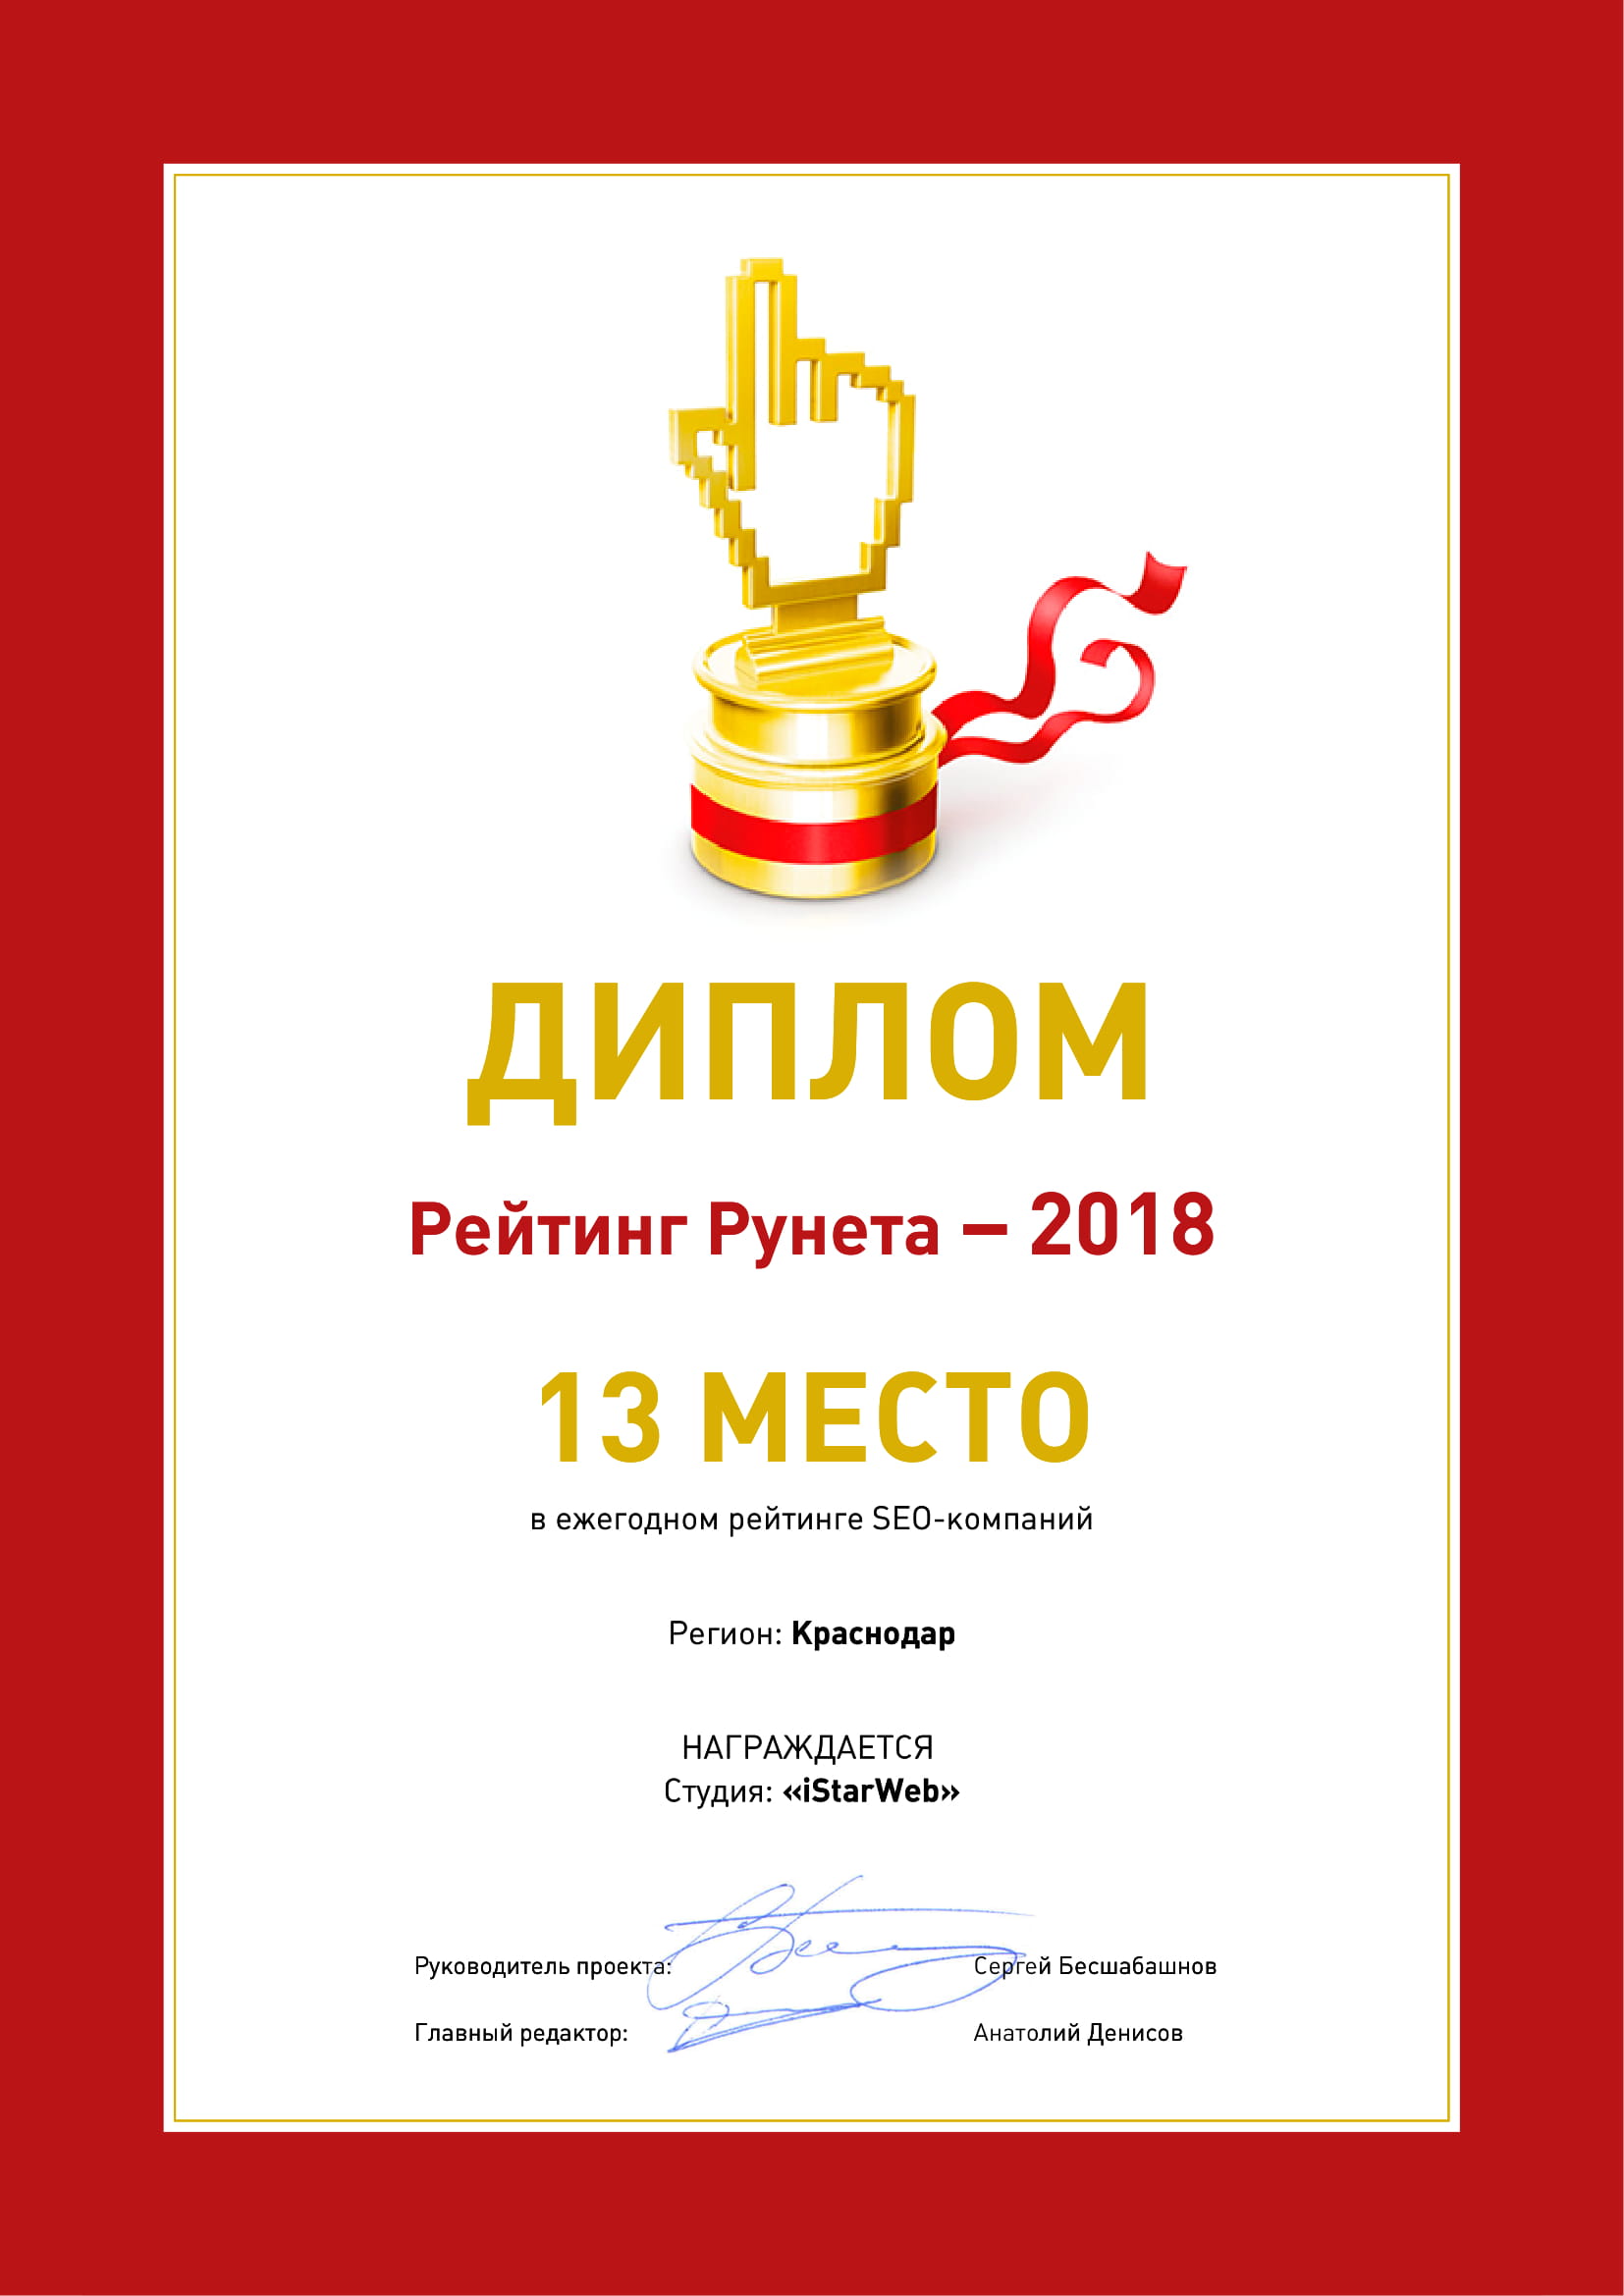 Рейтинг Рунета - Димплом, 13 место